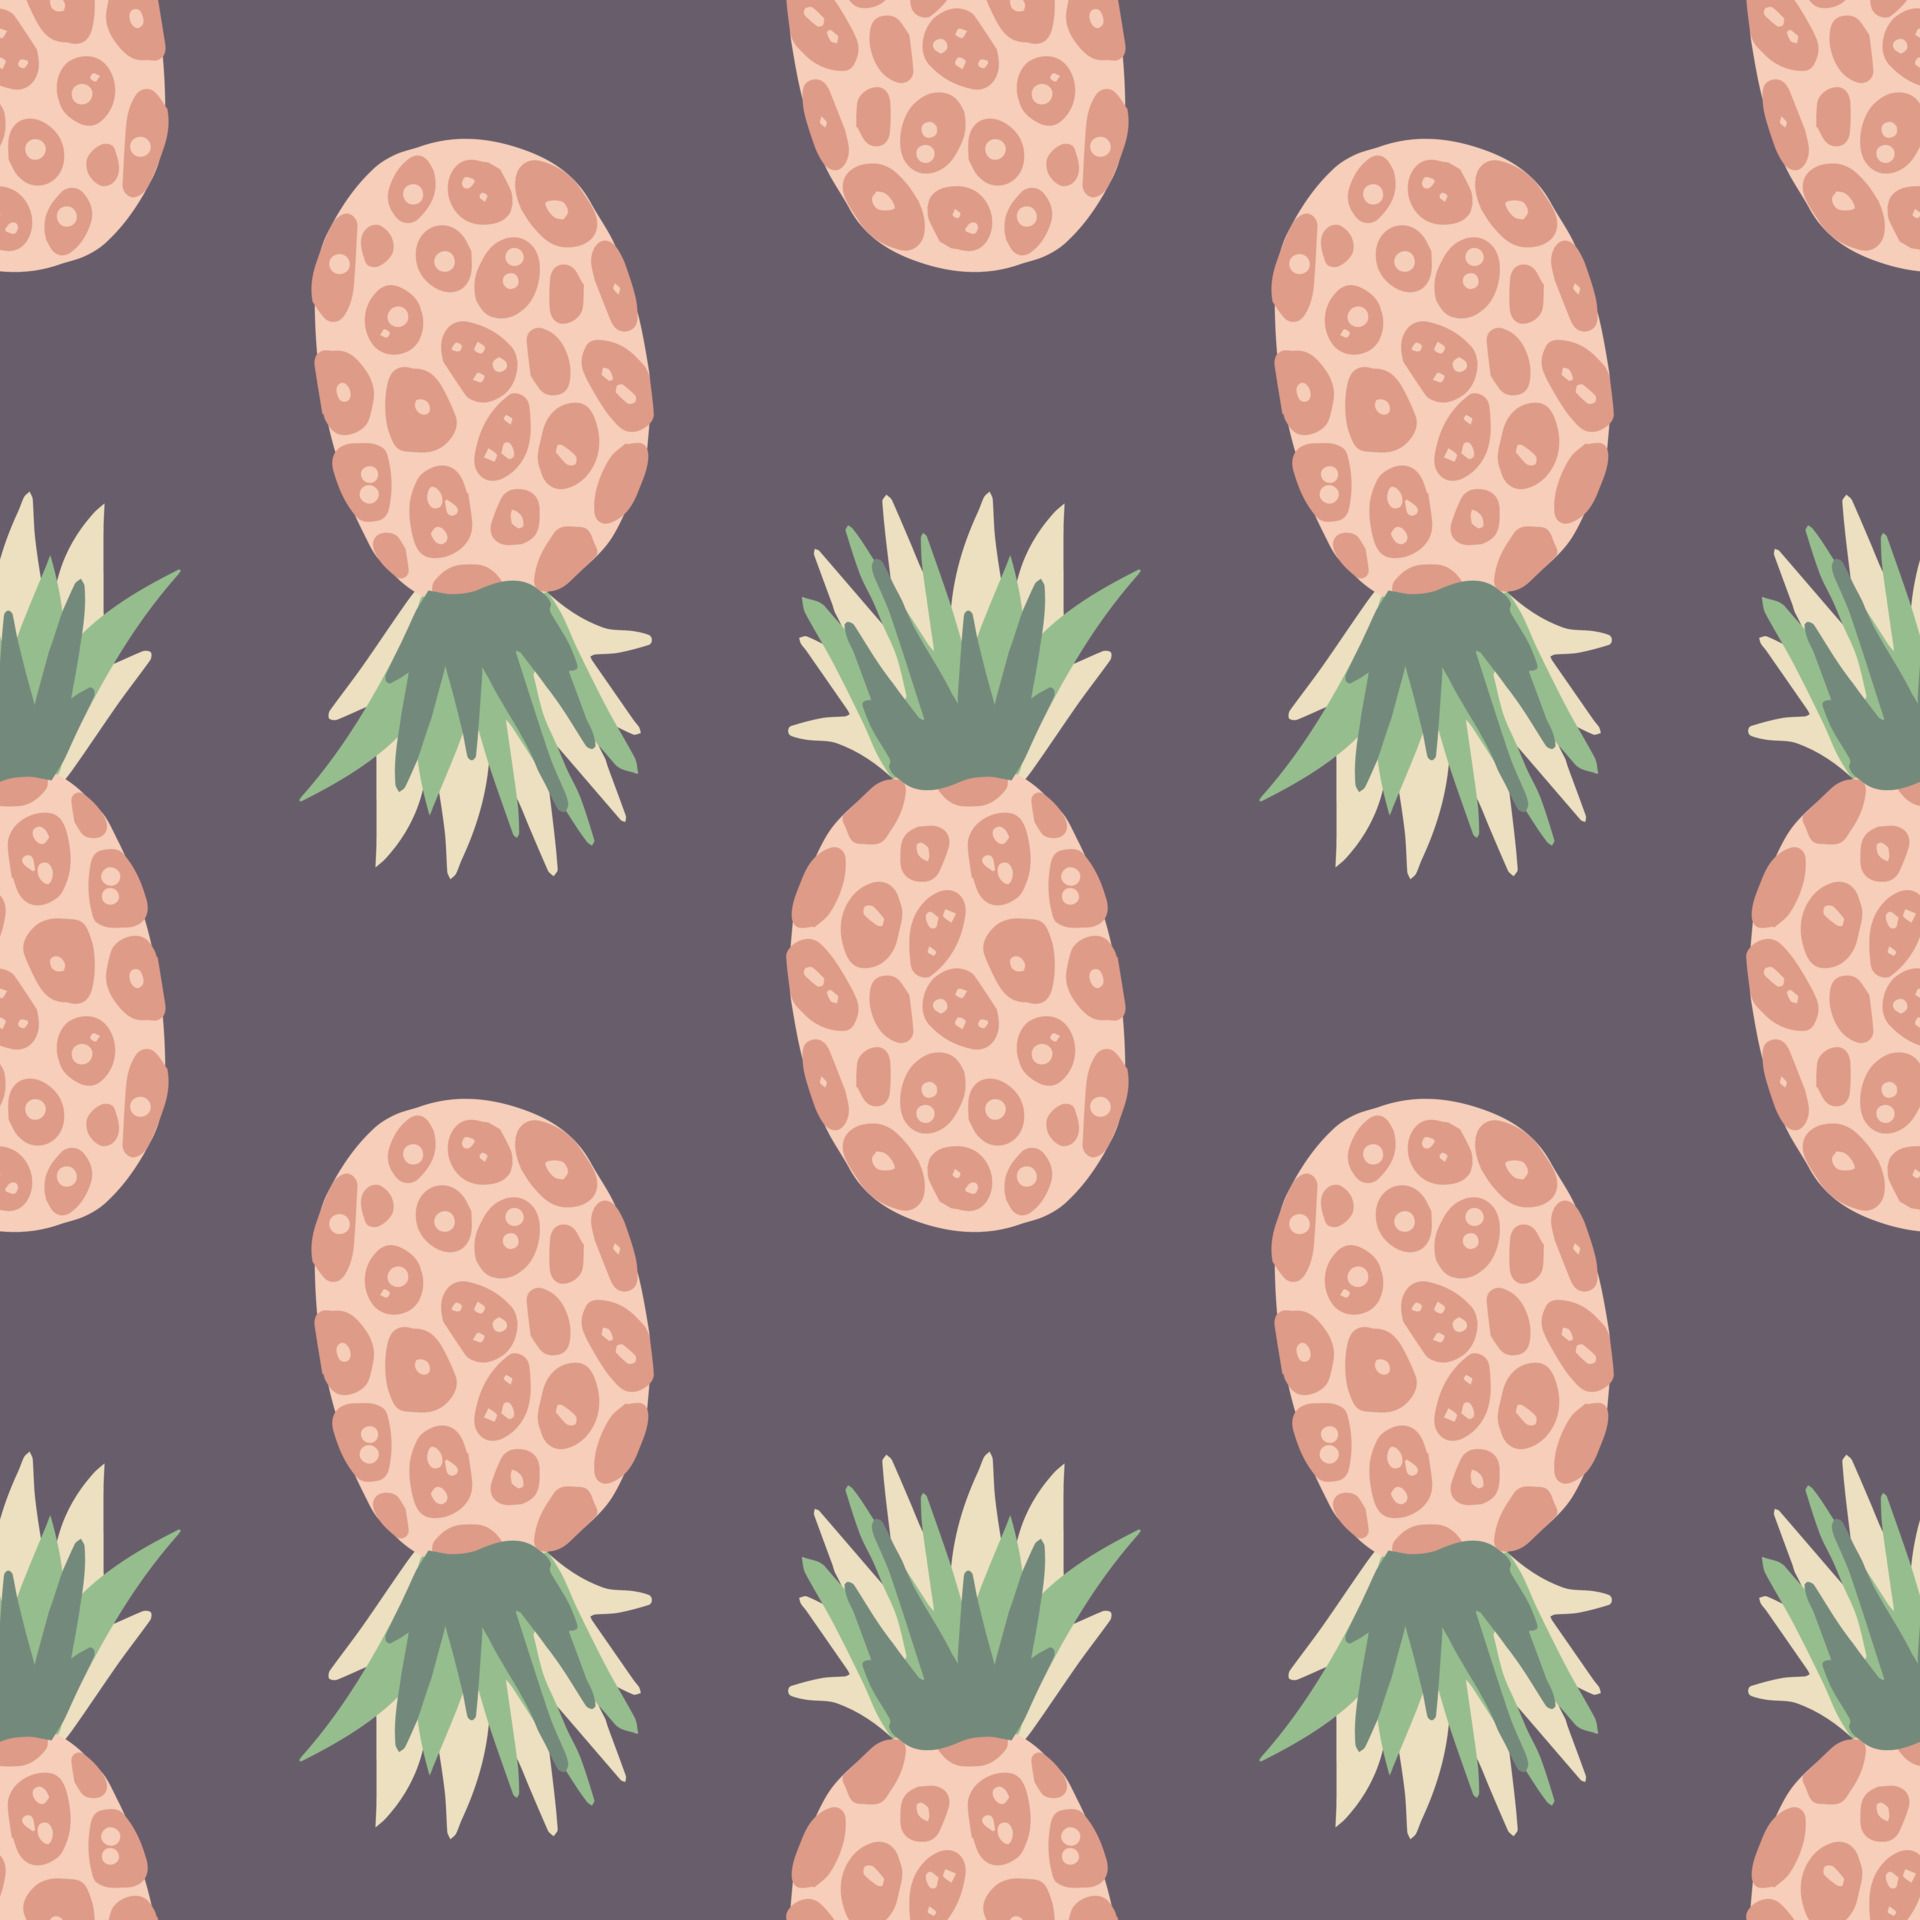 Details pineapple aesthetic wallpaper